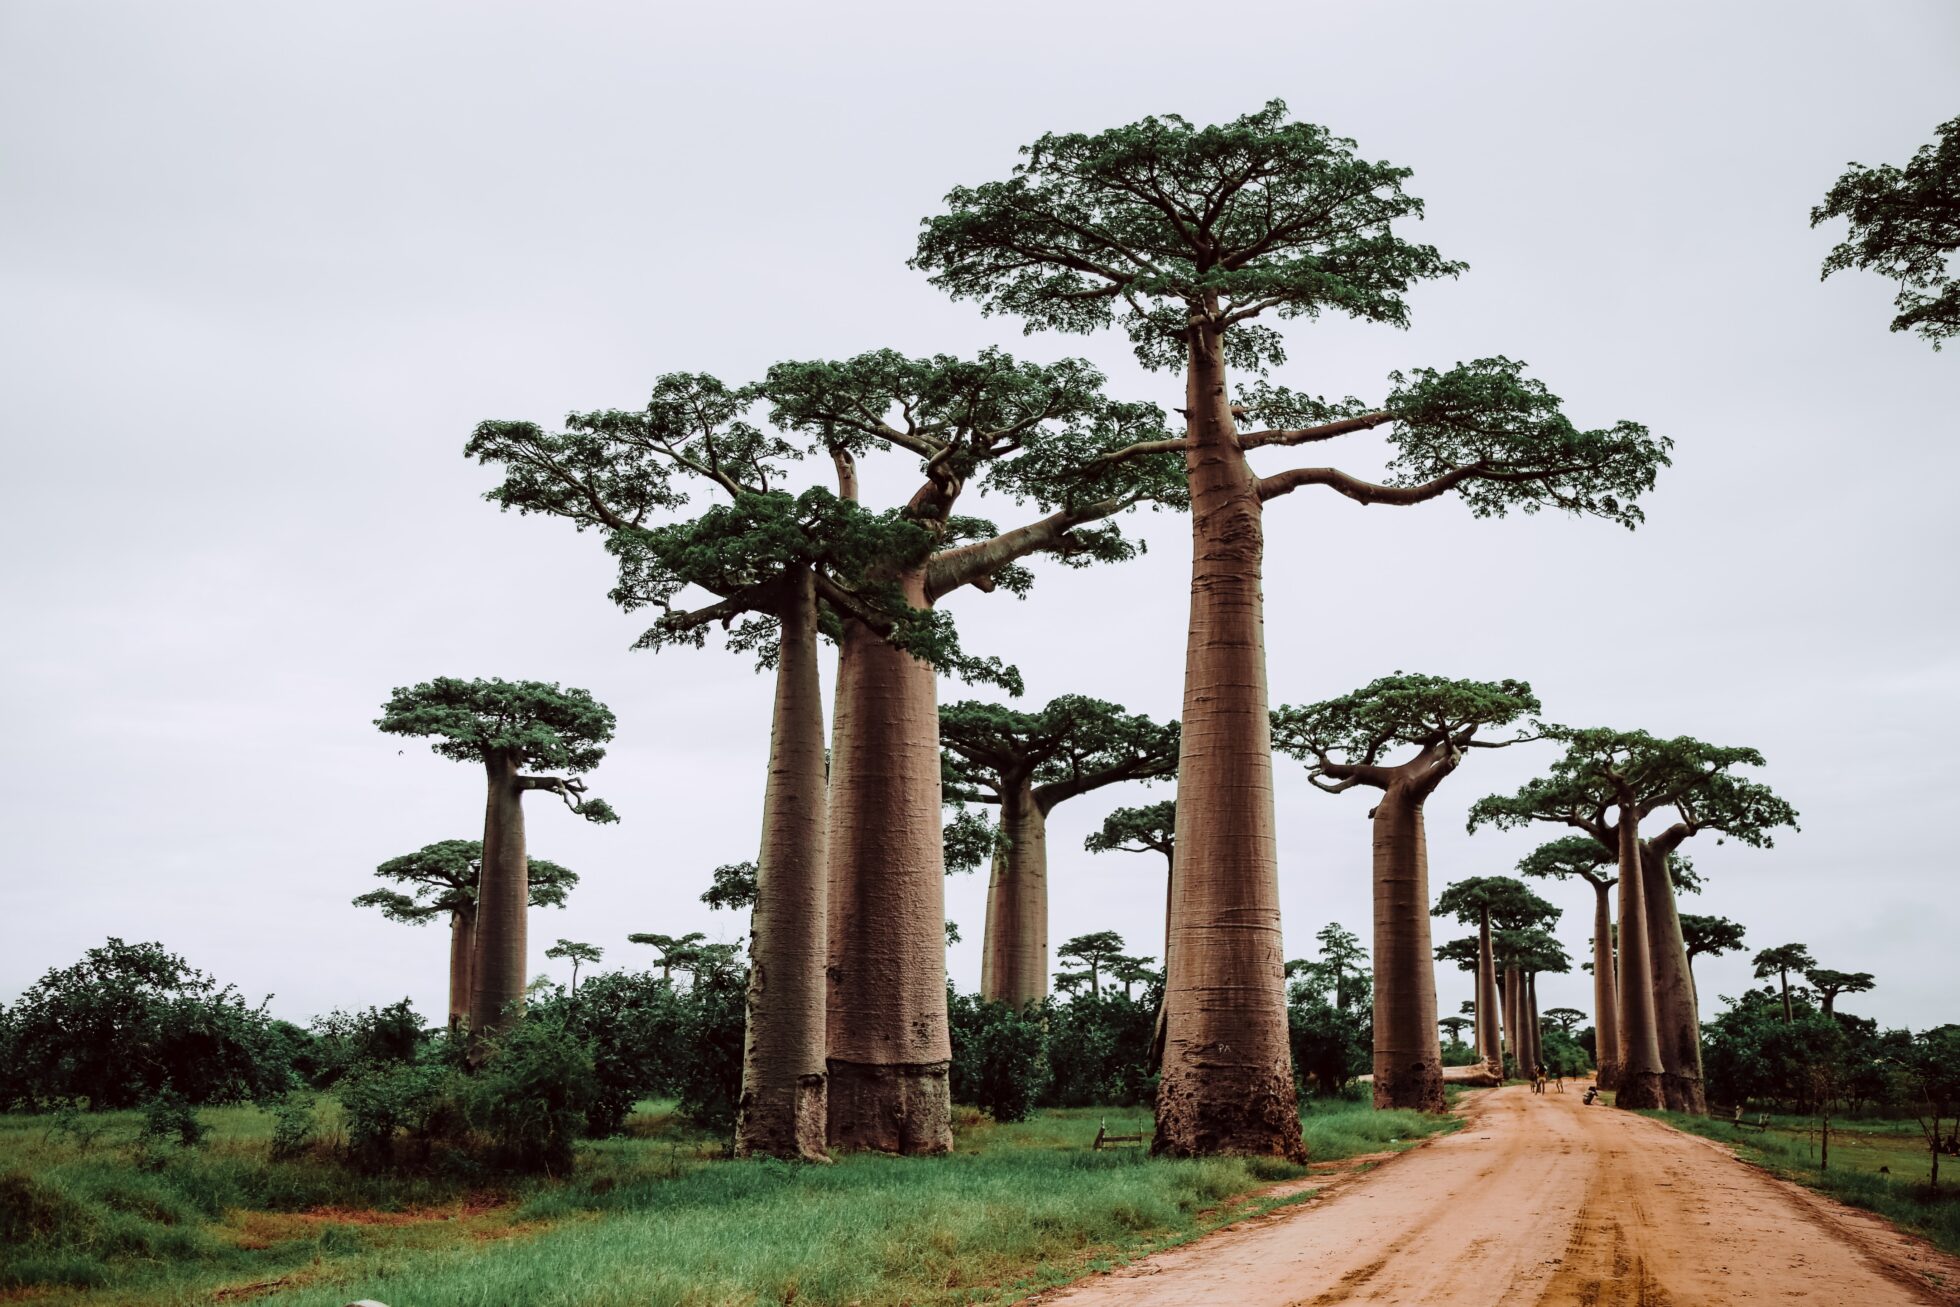 Visit a sacred Baobab tree